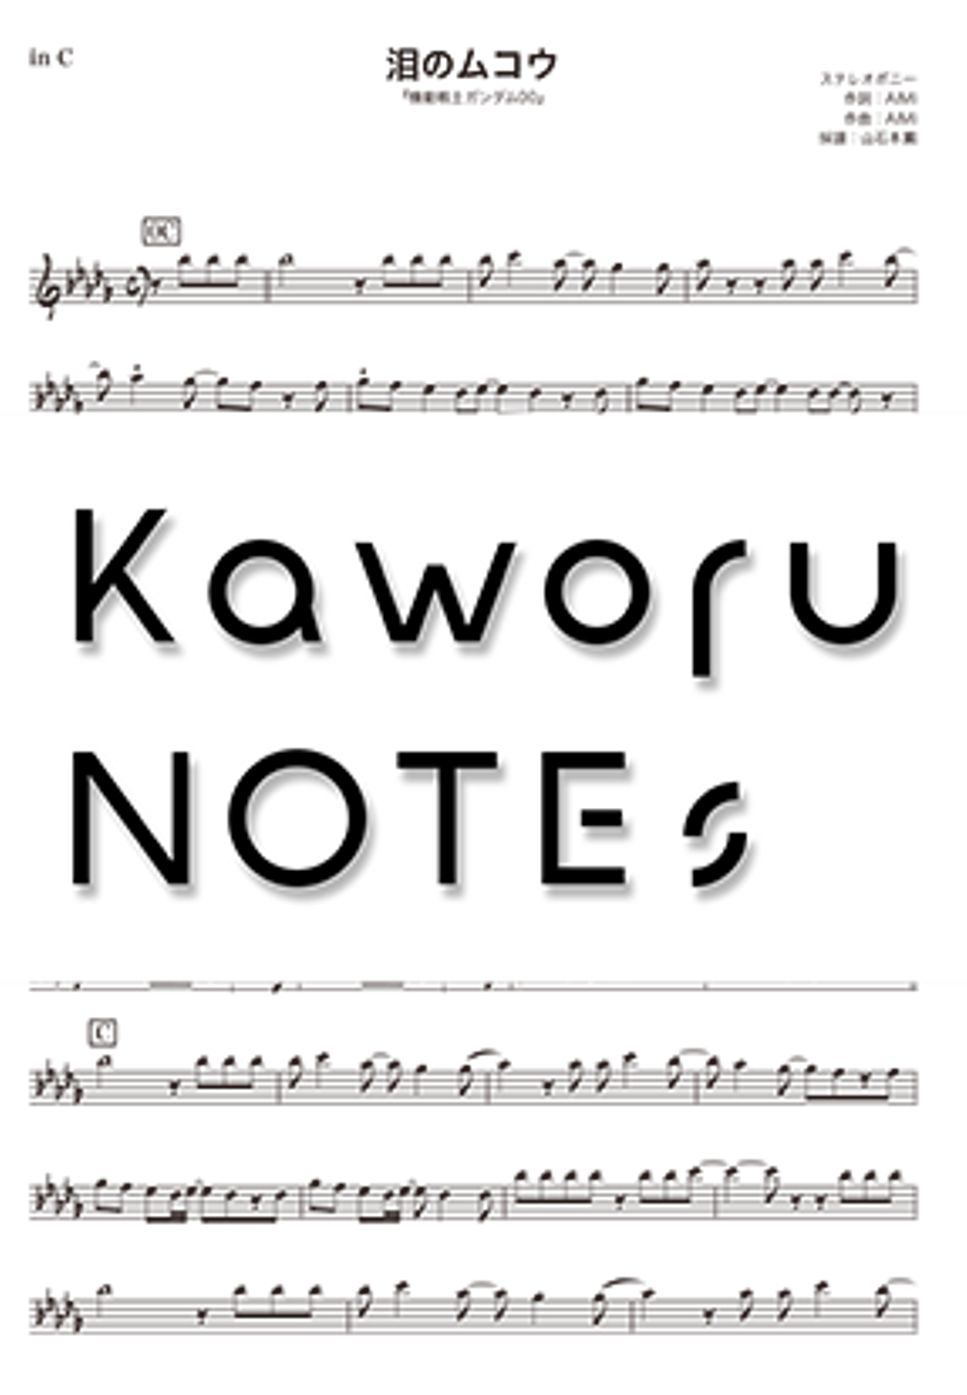 ステレオポニー - 泪のムコウ（動画版『機動戦士ガンダム00』） by Kaworu NOTEs